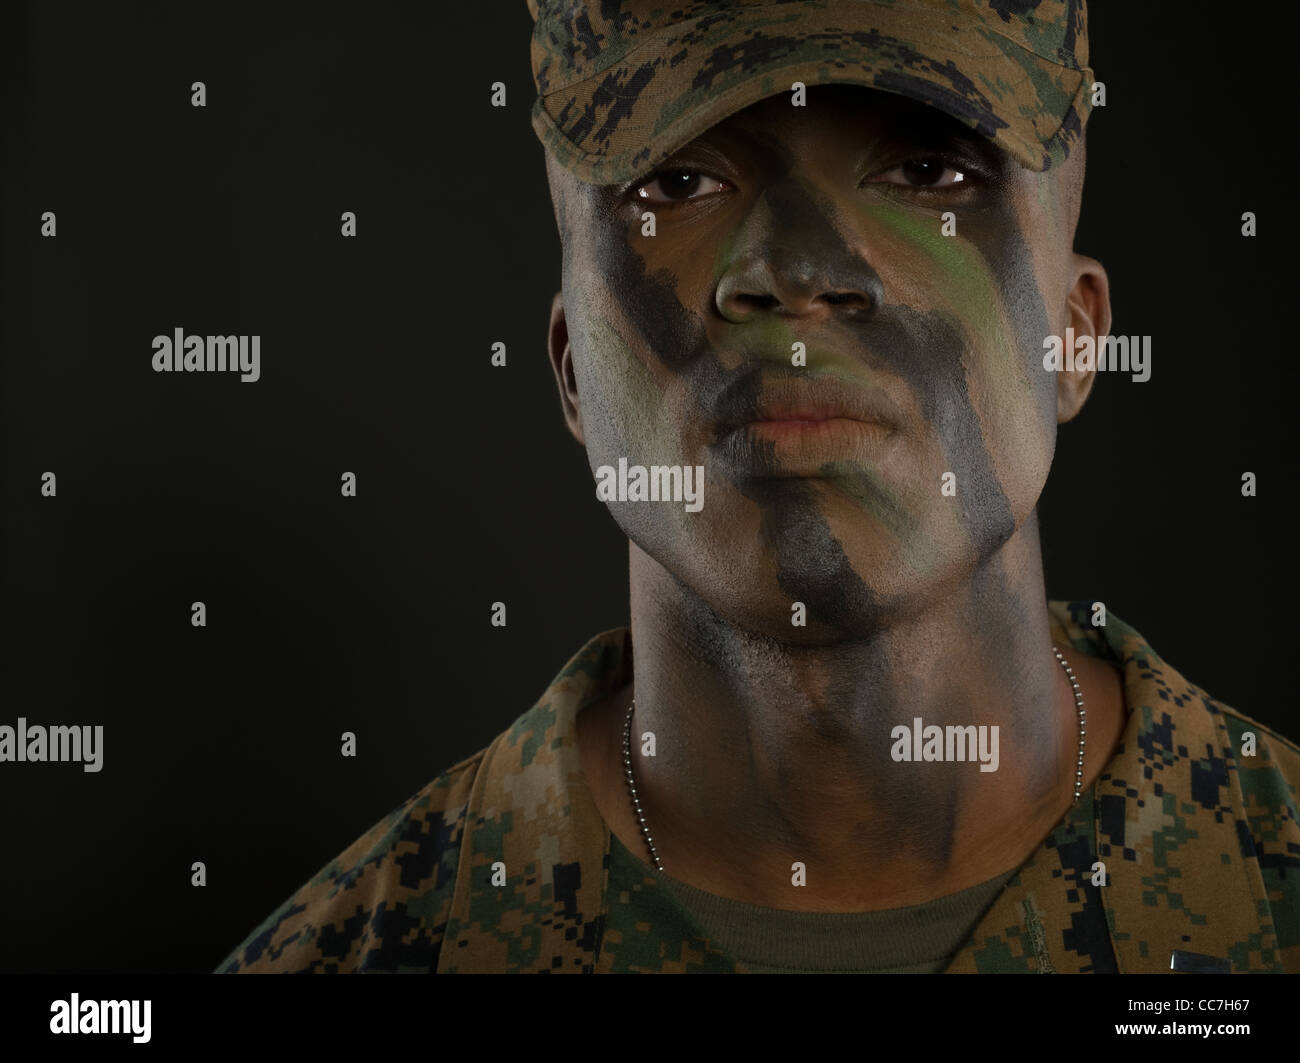 Officier du Corps des Marines des États-Unis en uniforme de camouflage digital MARPAT camo et la peinture pour le visage Banque D'Images